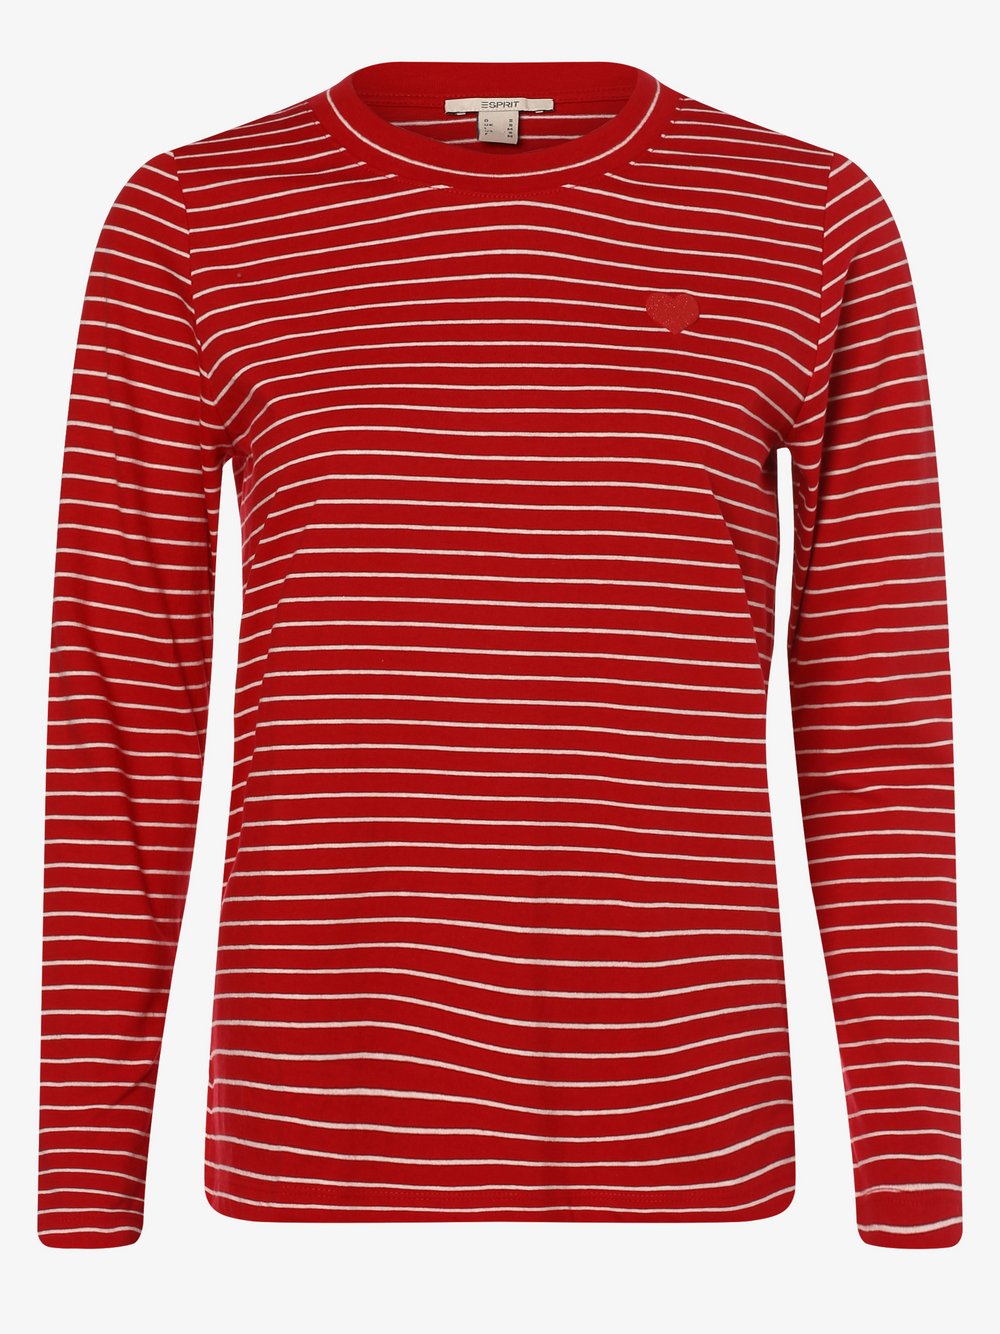 Esprit Casual - Damska koszulka z długim rękawem, czerwony